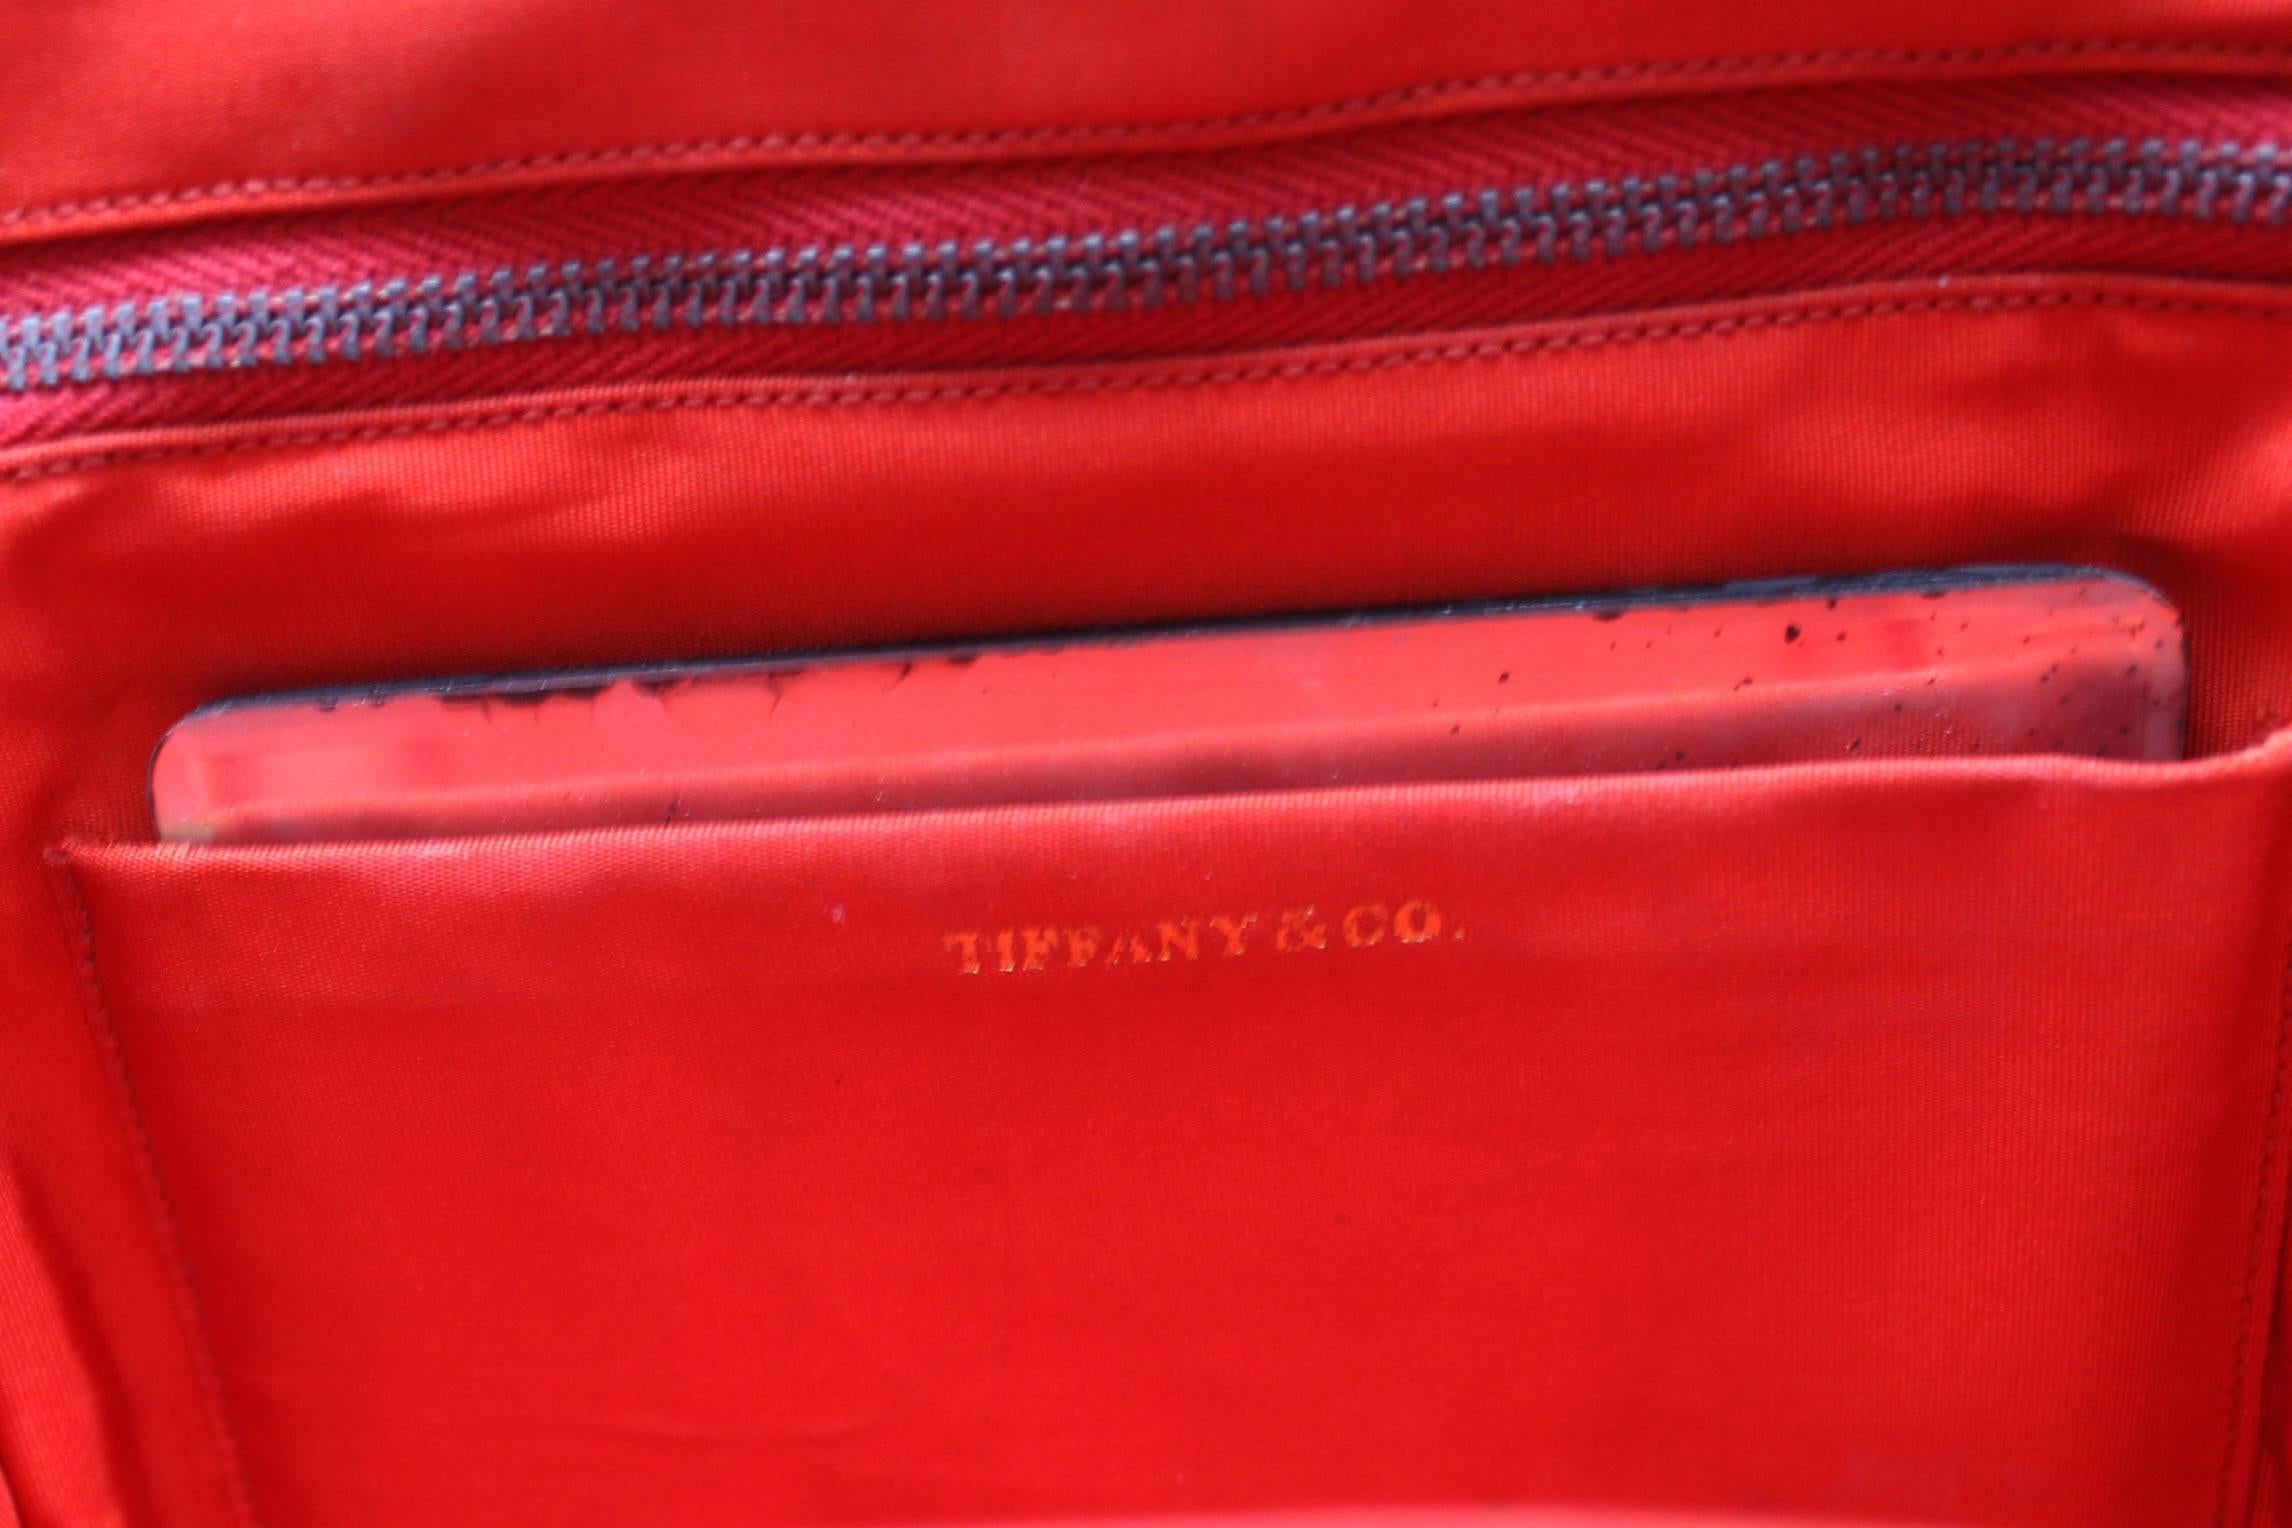 1940's Tiffany & Co Leather Handbag 3